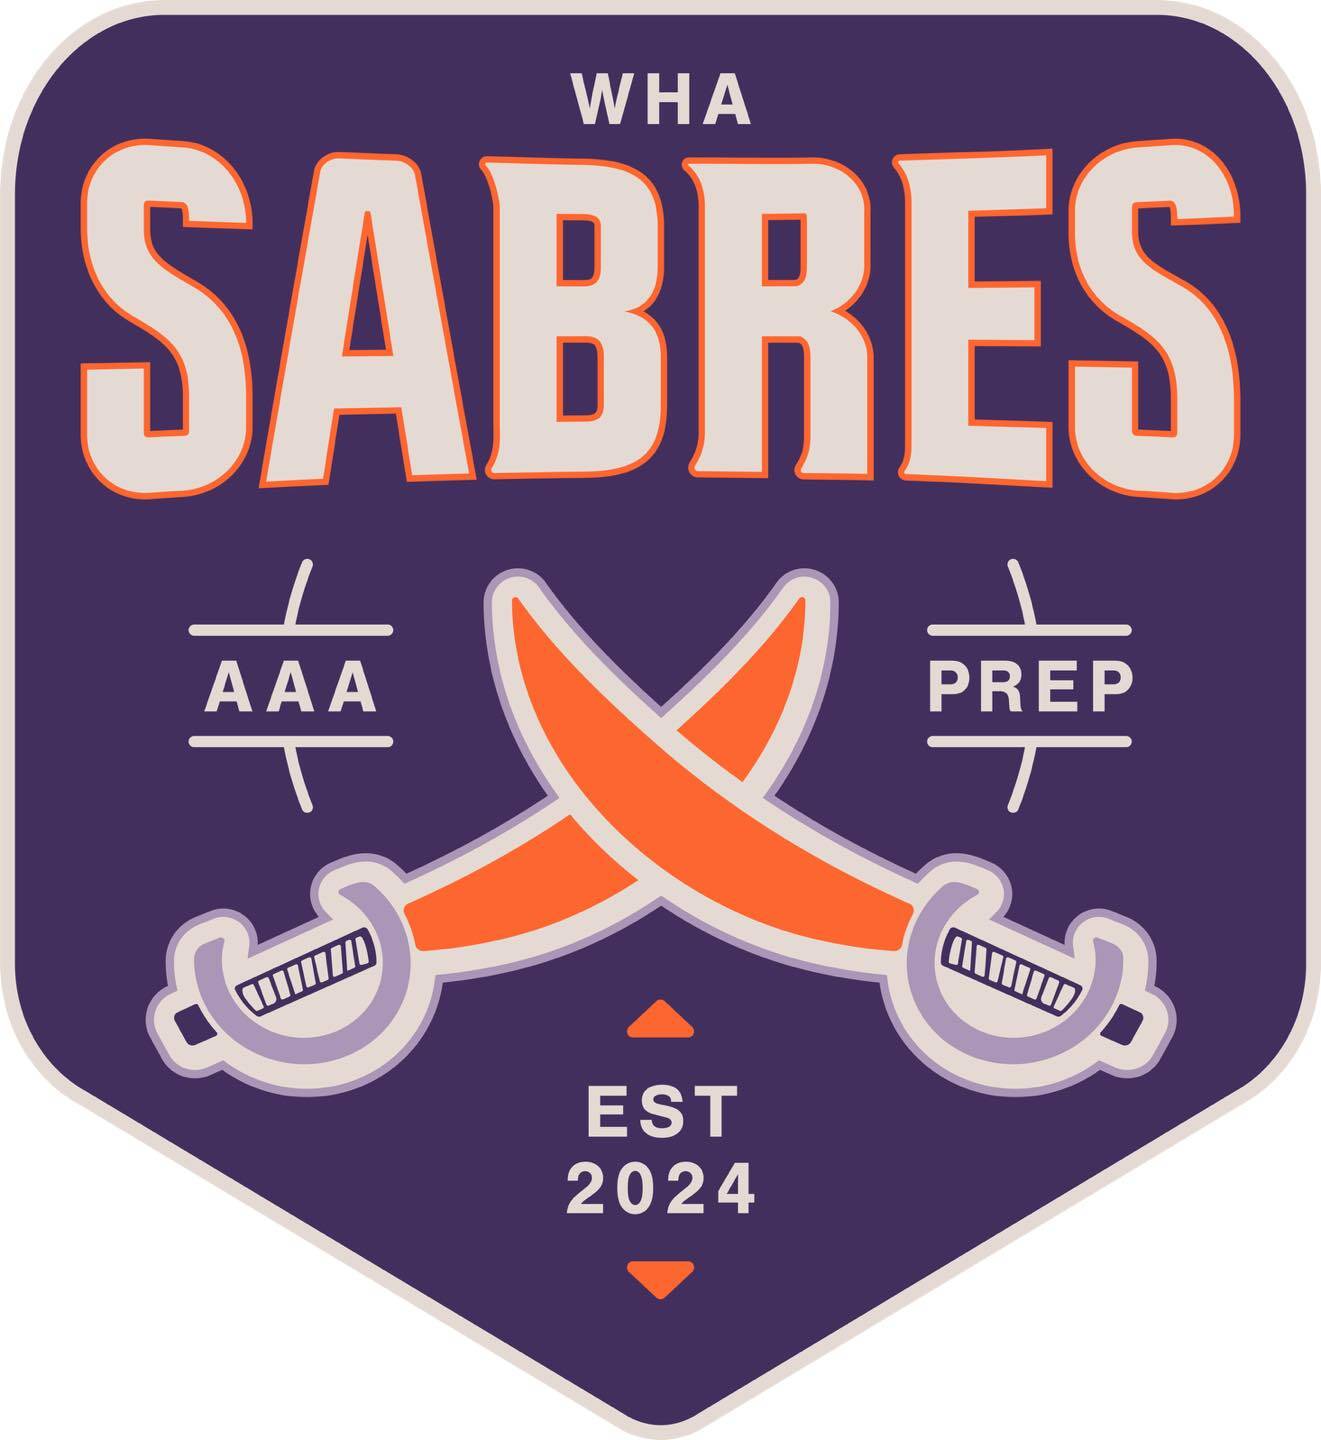 Sabres_logo1.jpg